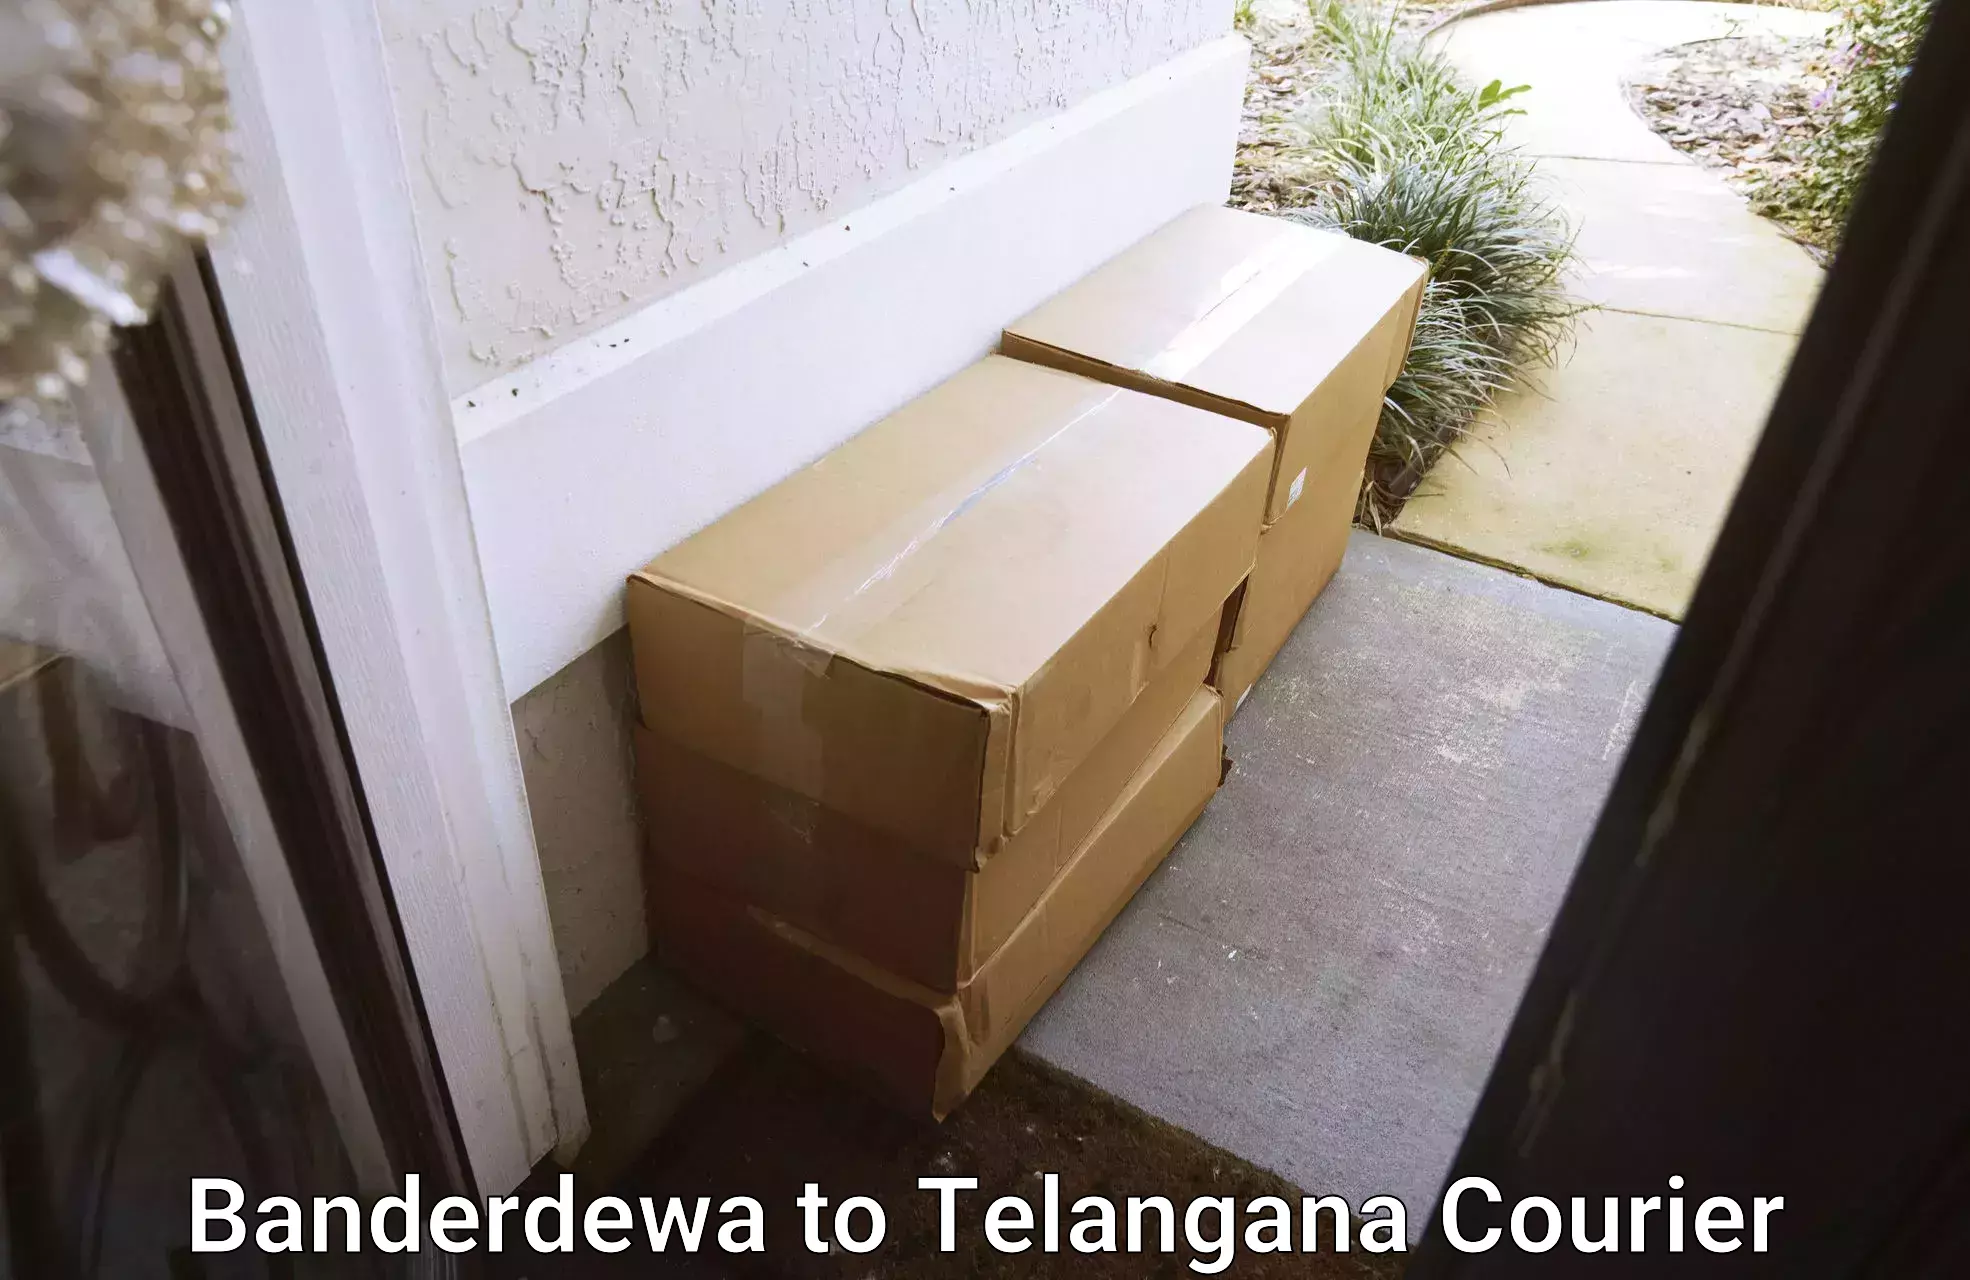 Doorstep delivery service Banderdewa to Yellareddy